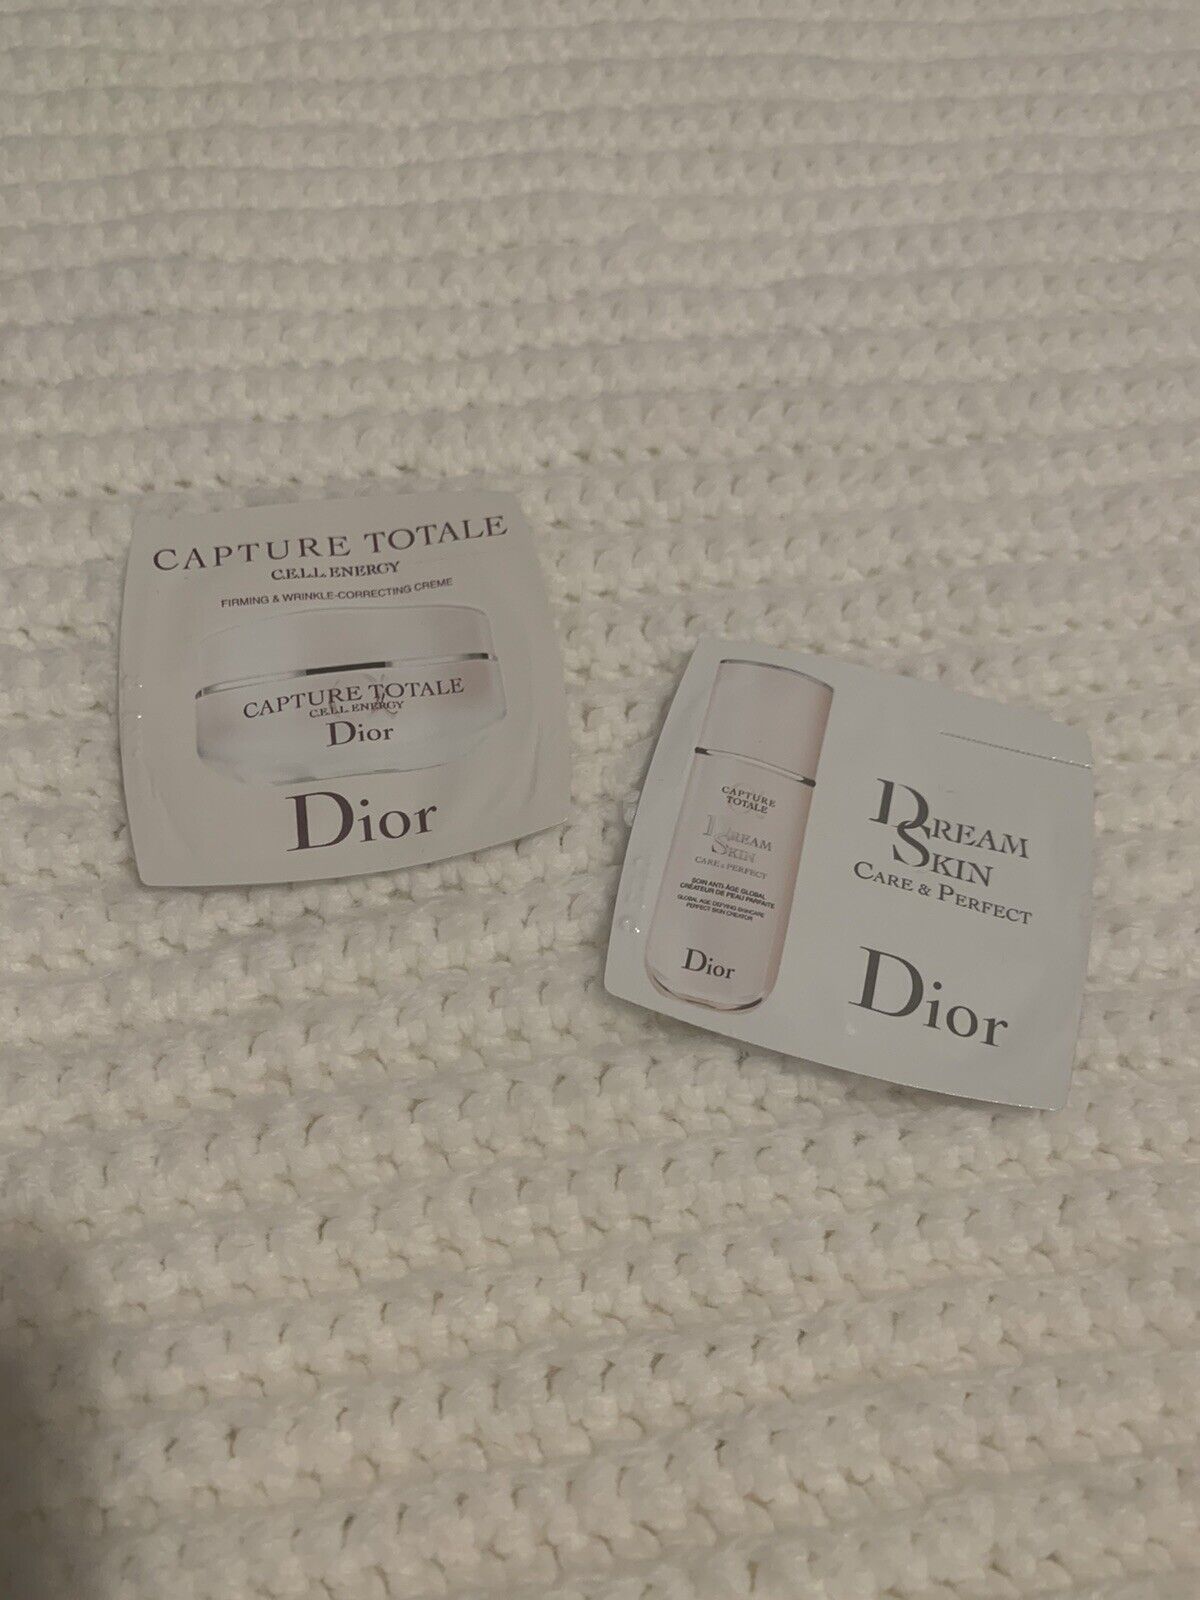 Dior Skincare Samples